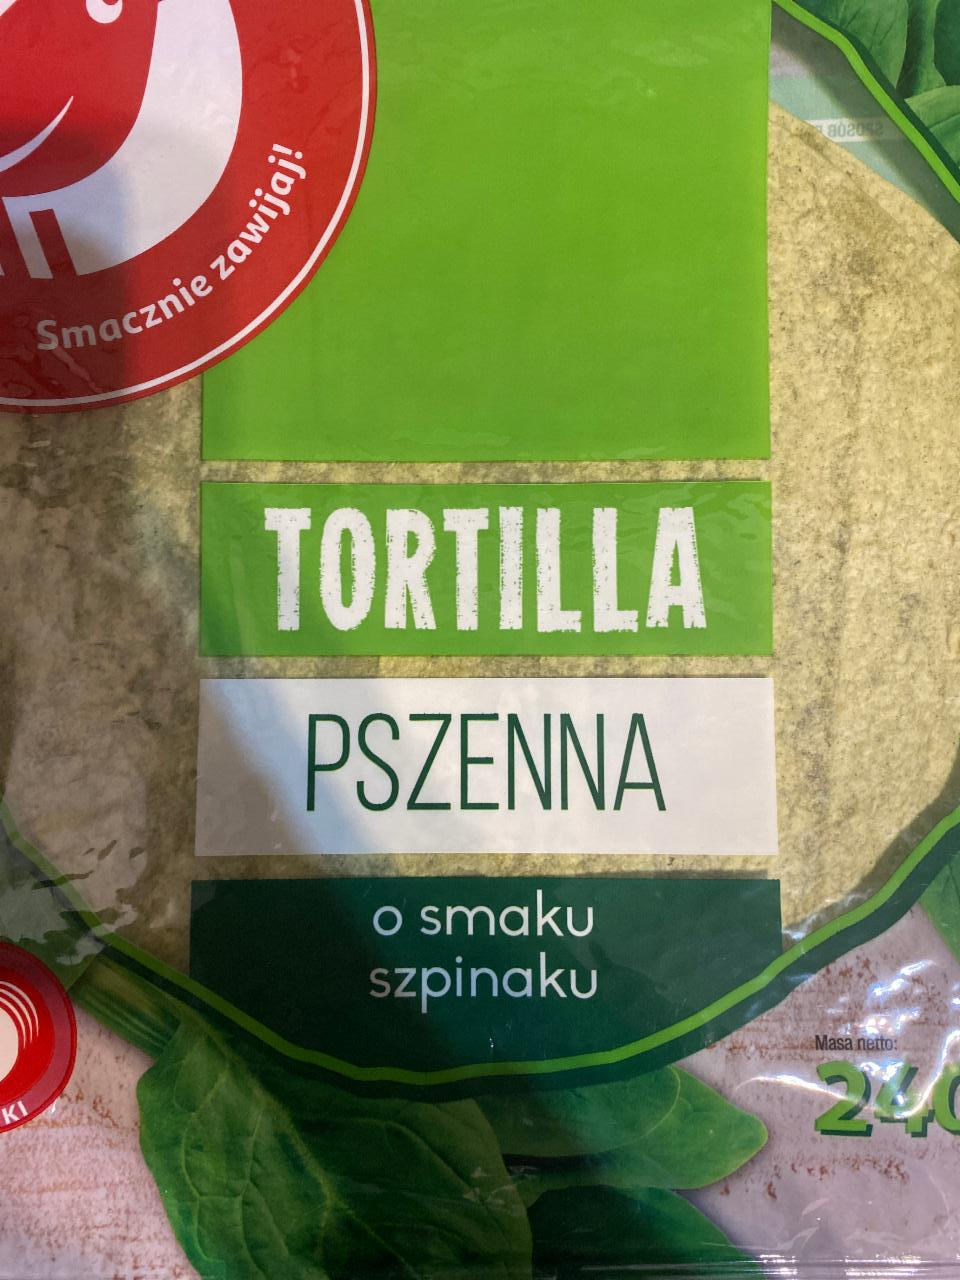 Fotografie - Tortilla Pszenna o smaku szpinaku Auchan